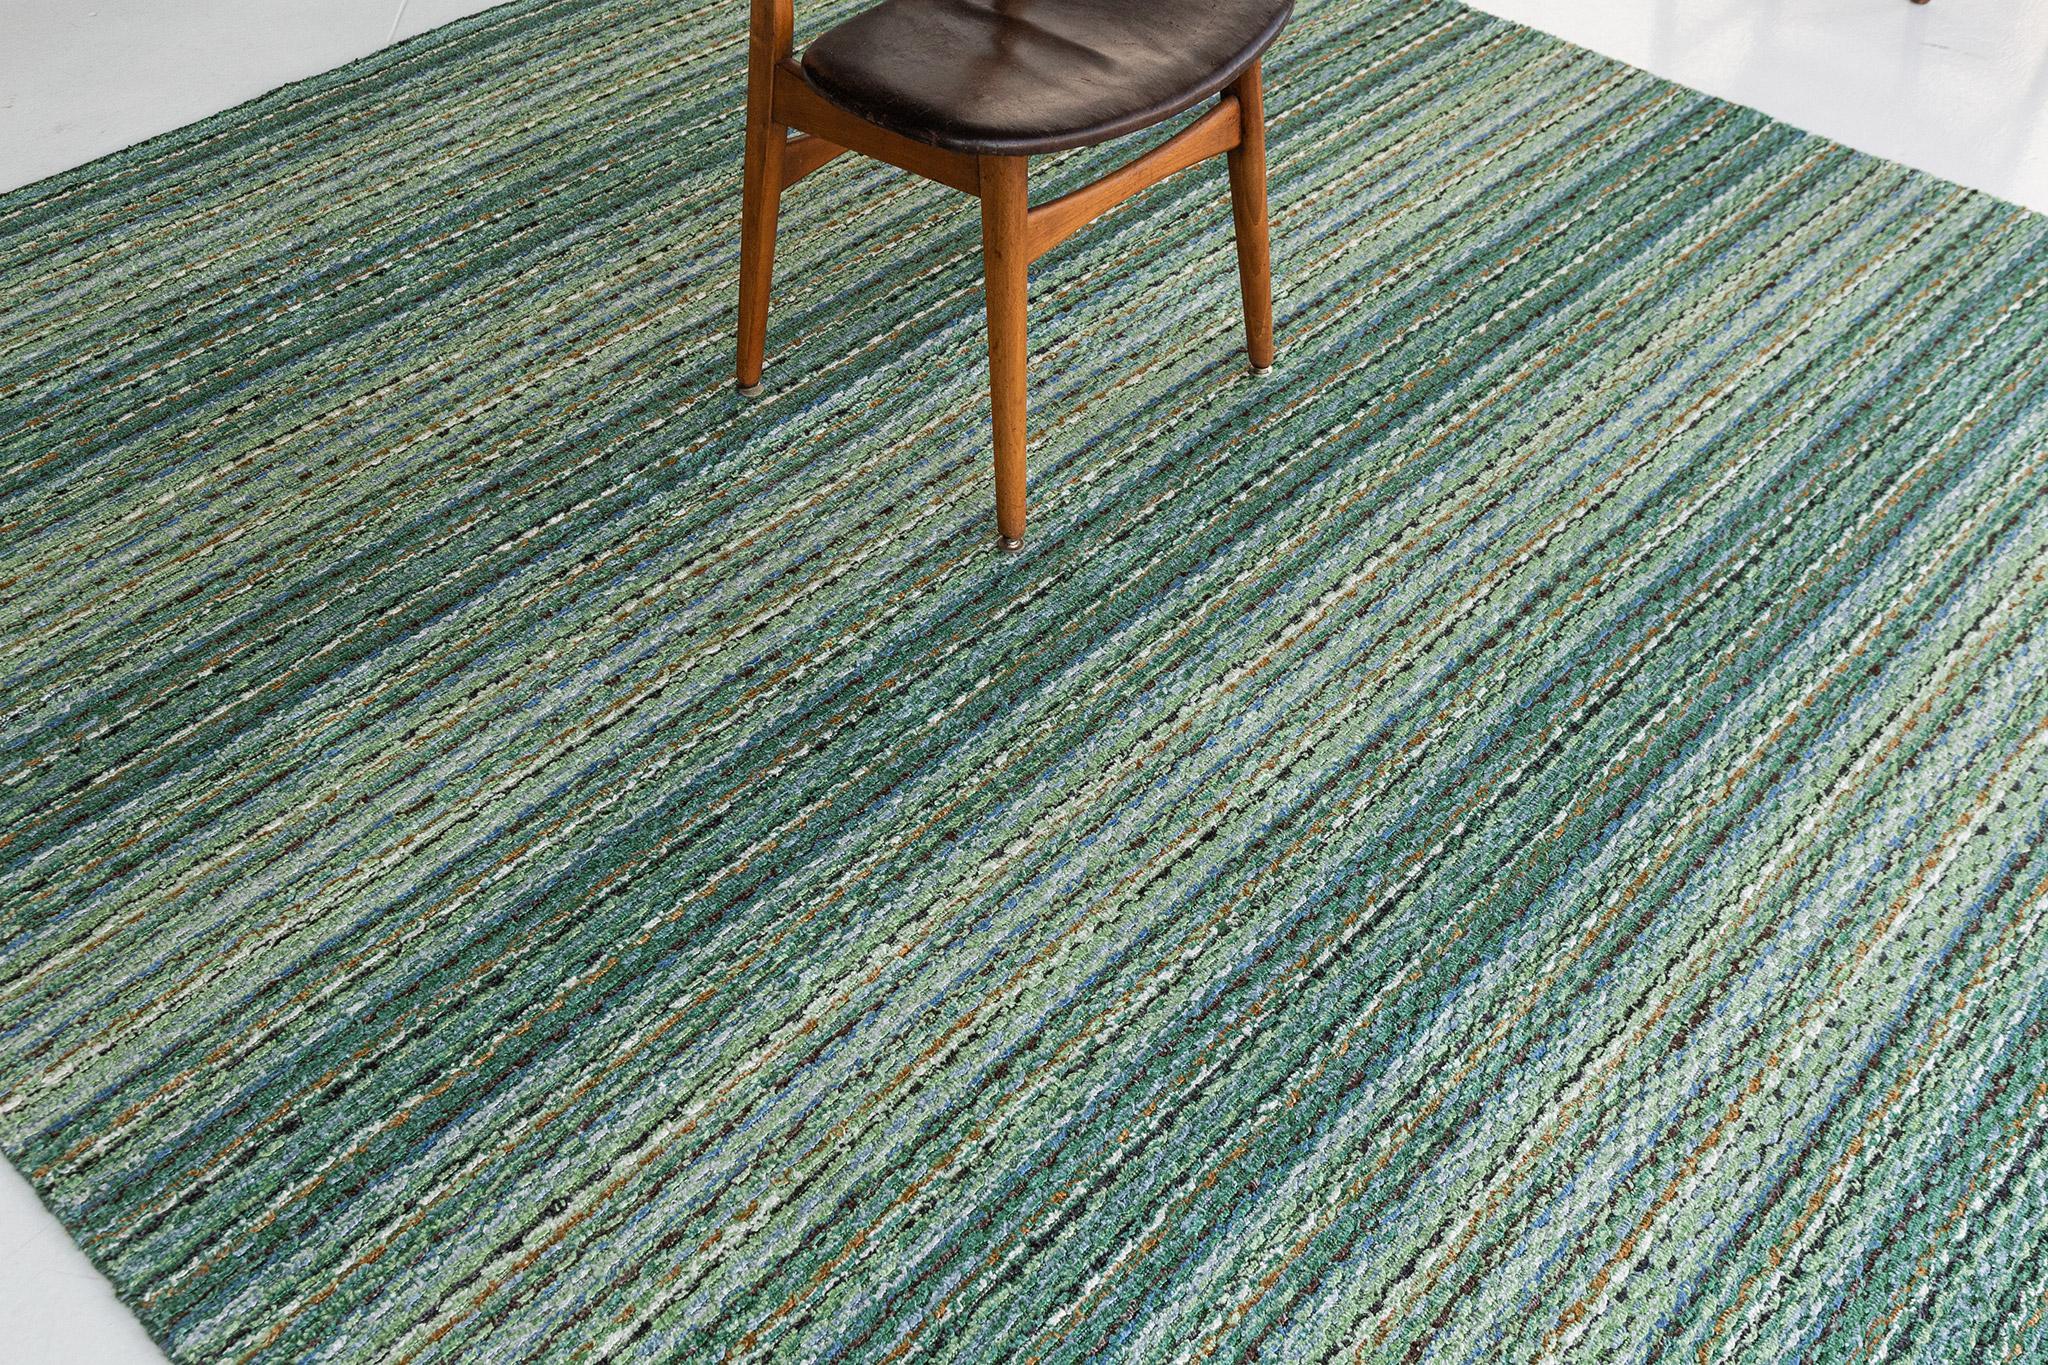 Un fascinant tapis moderne tissé à la main dans notre Collection S. Luca. Le délicat tapis de style côtelé dans des tons vibrants de vert et de jaune lui donne un air sophistiqué et festif. La répétition des détails des poils confère également à